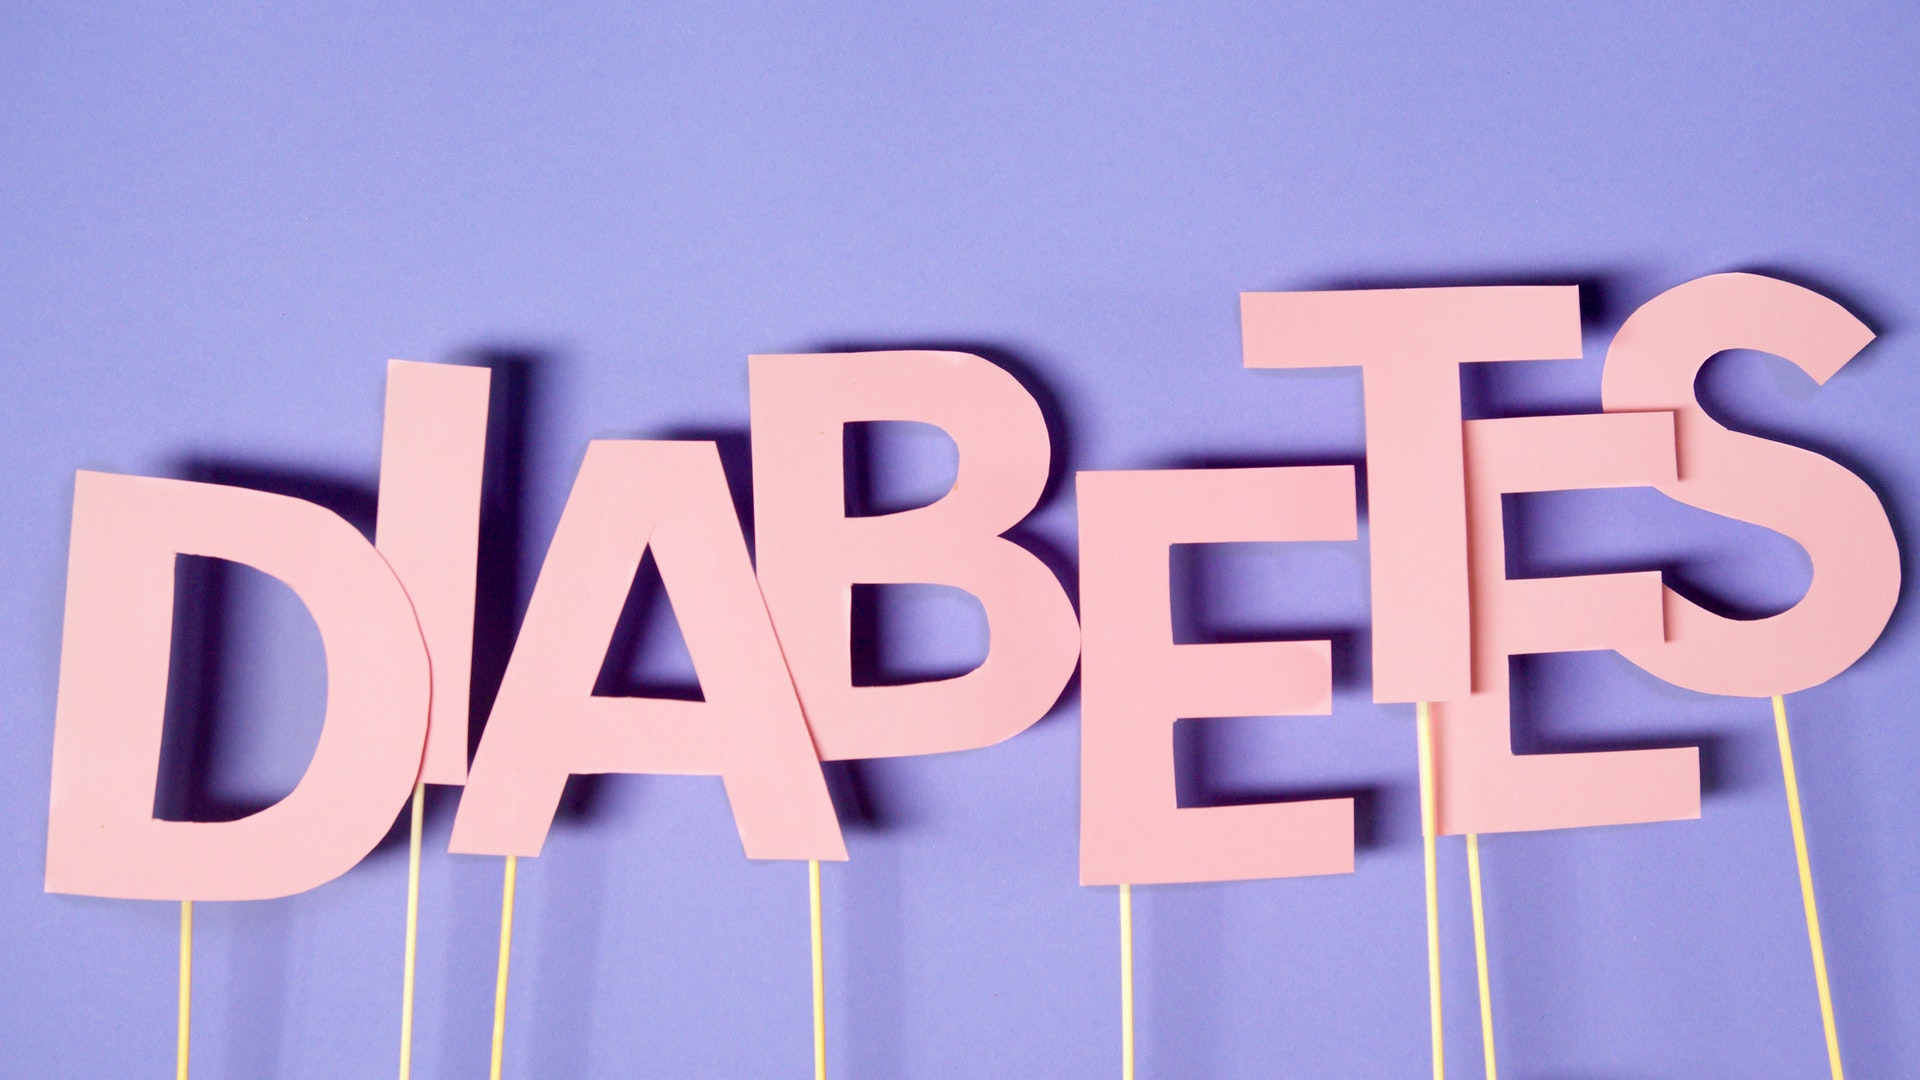 What is prediabetes?